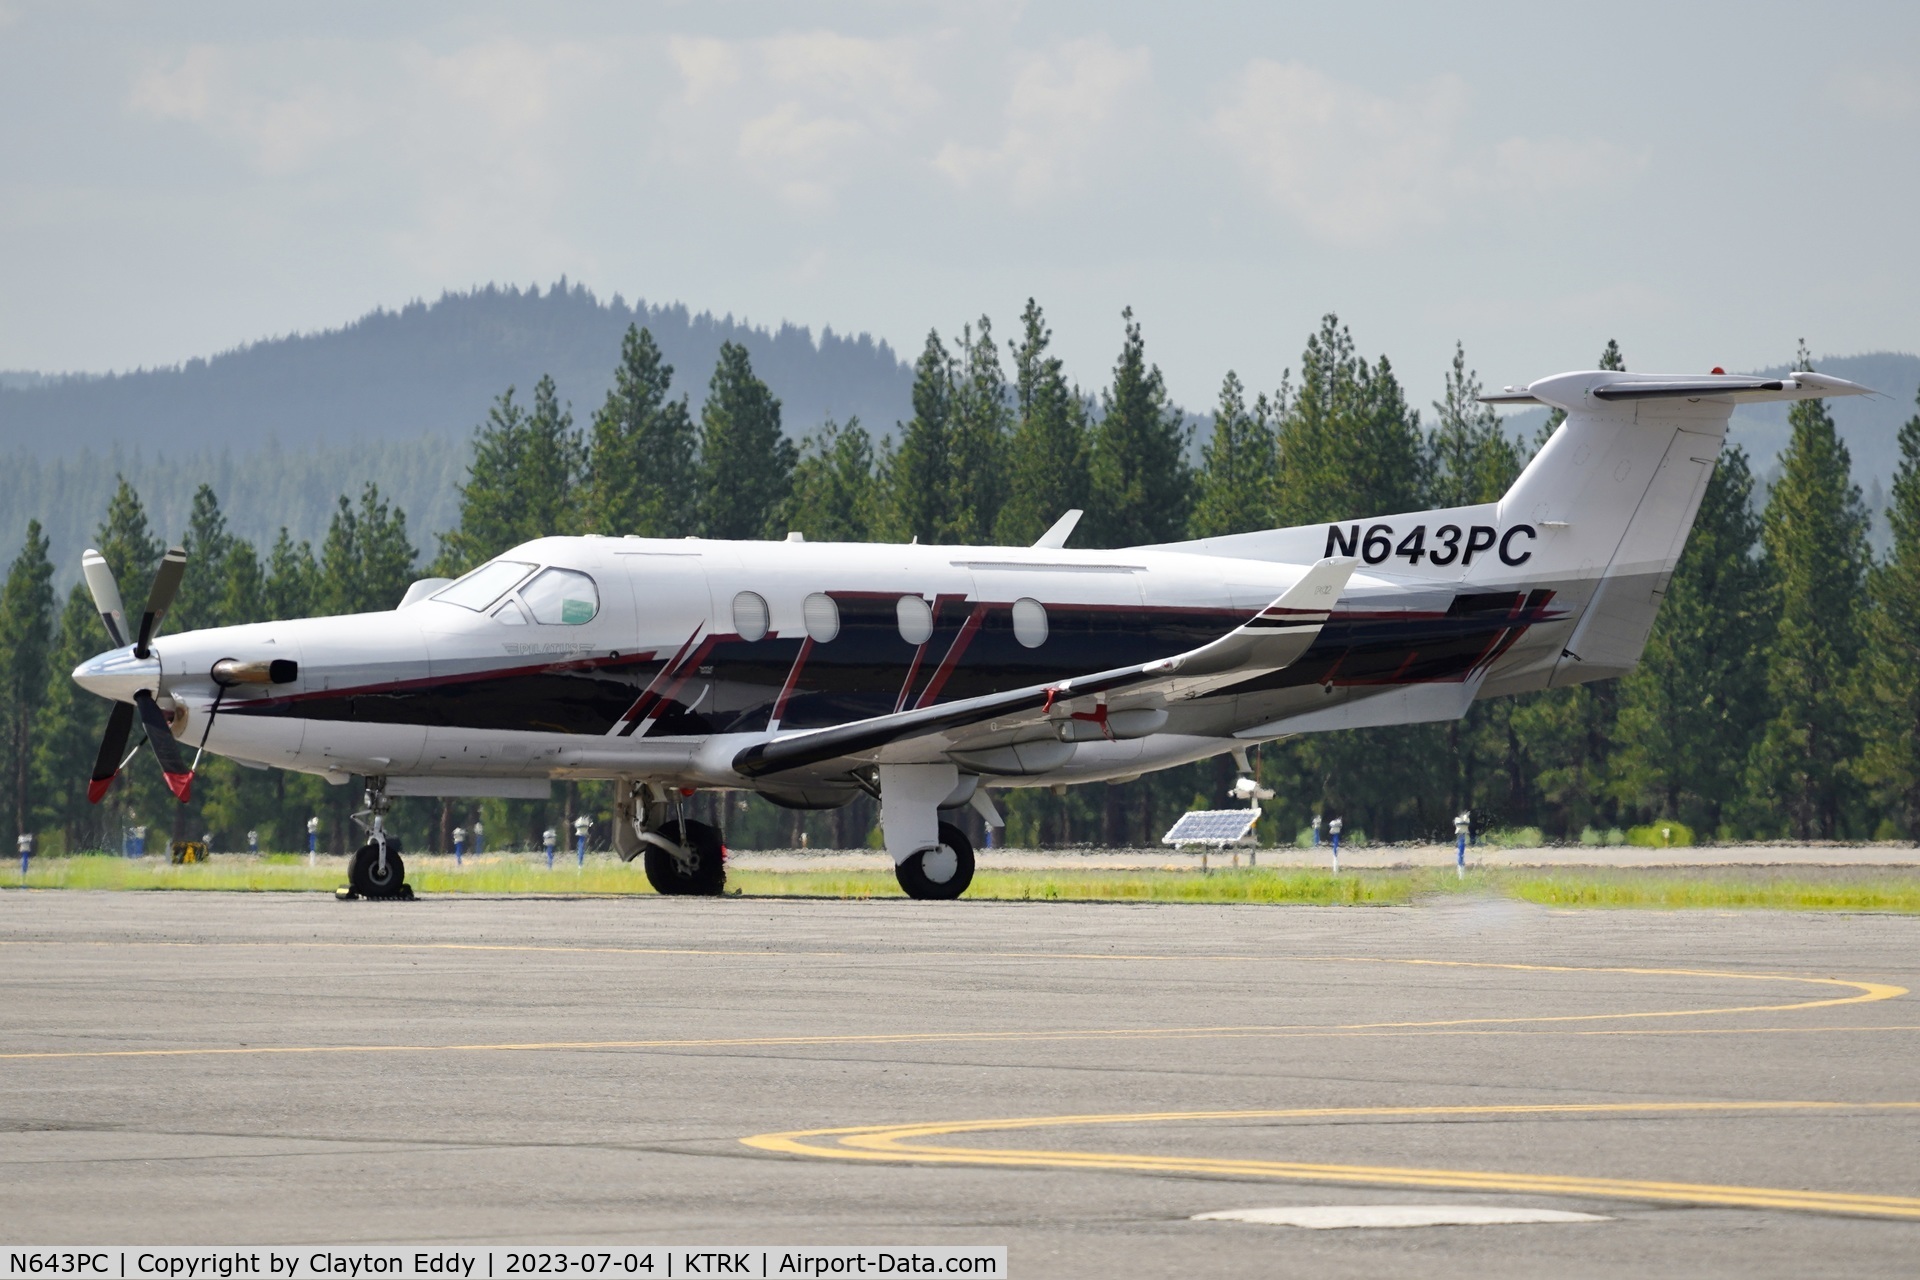 N643PC, 2005 Pilatus PC-12/45 C/N 643, Truckee Tahoe airport in California 2023.